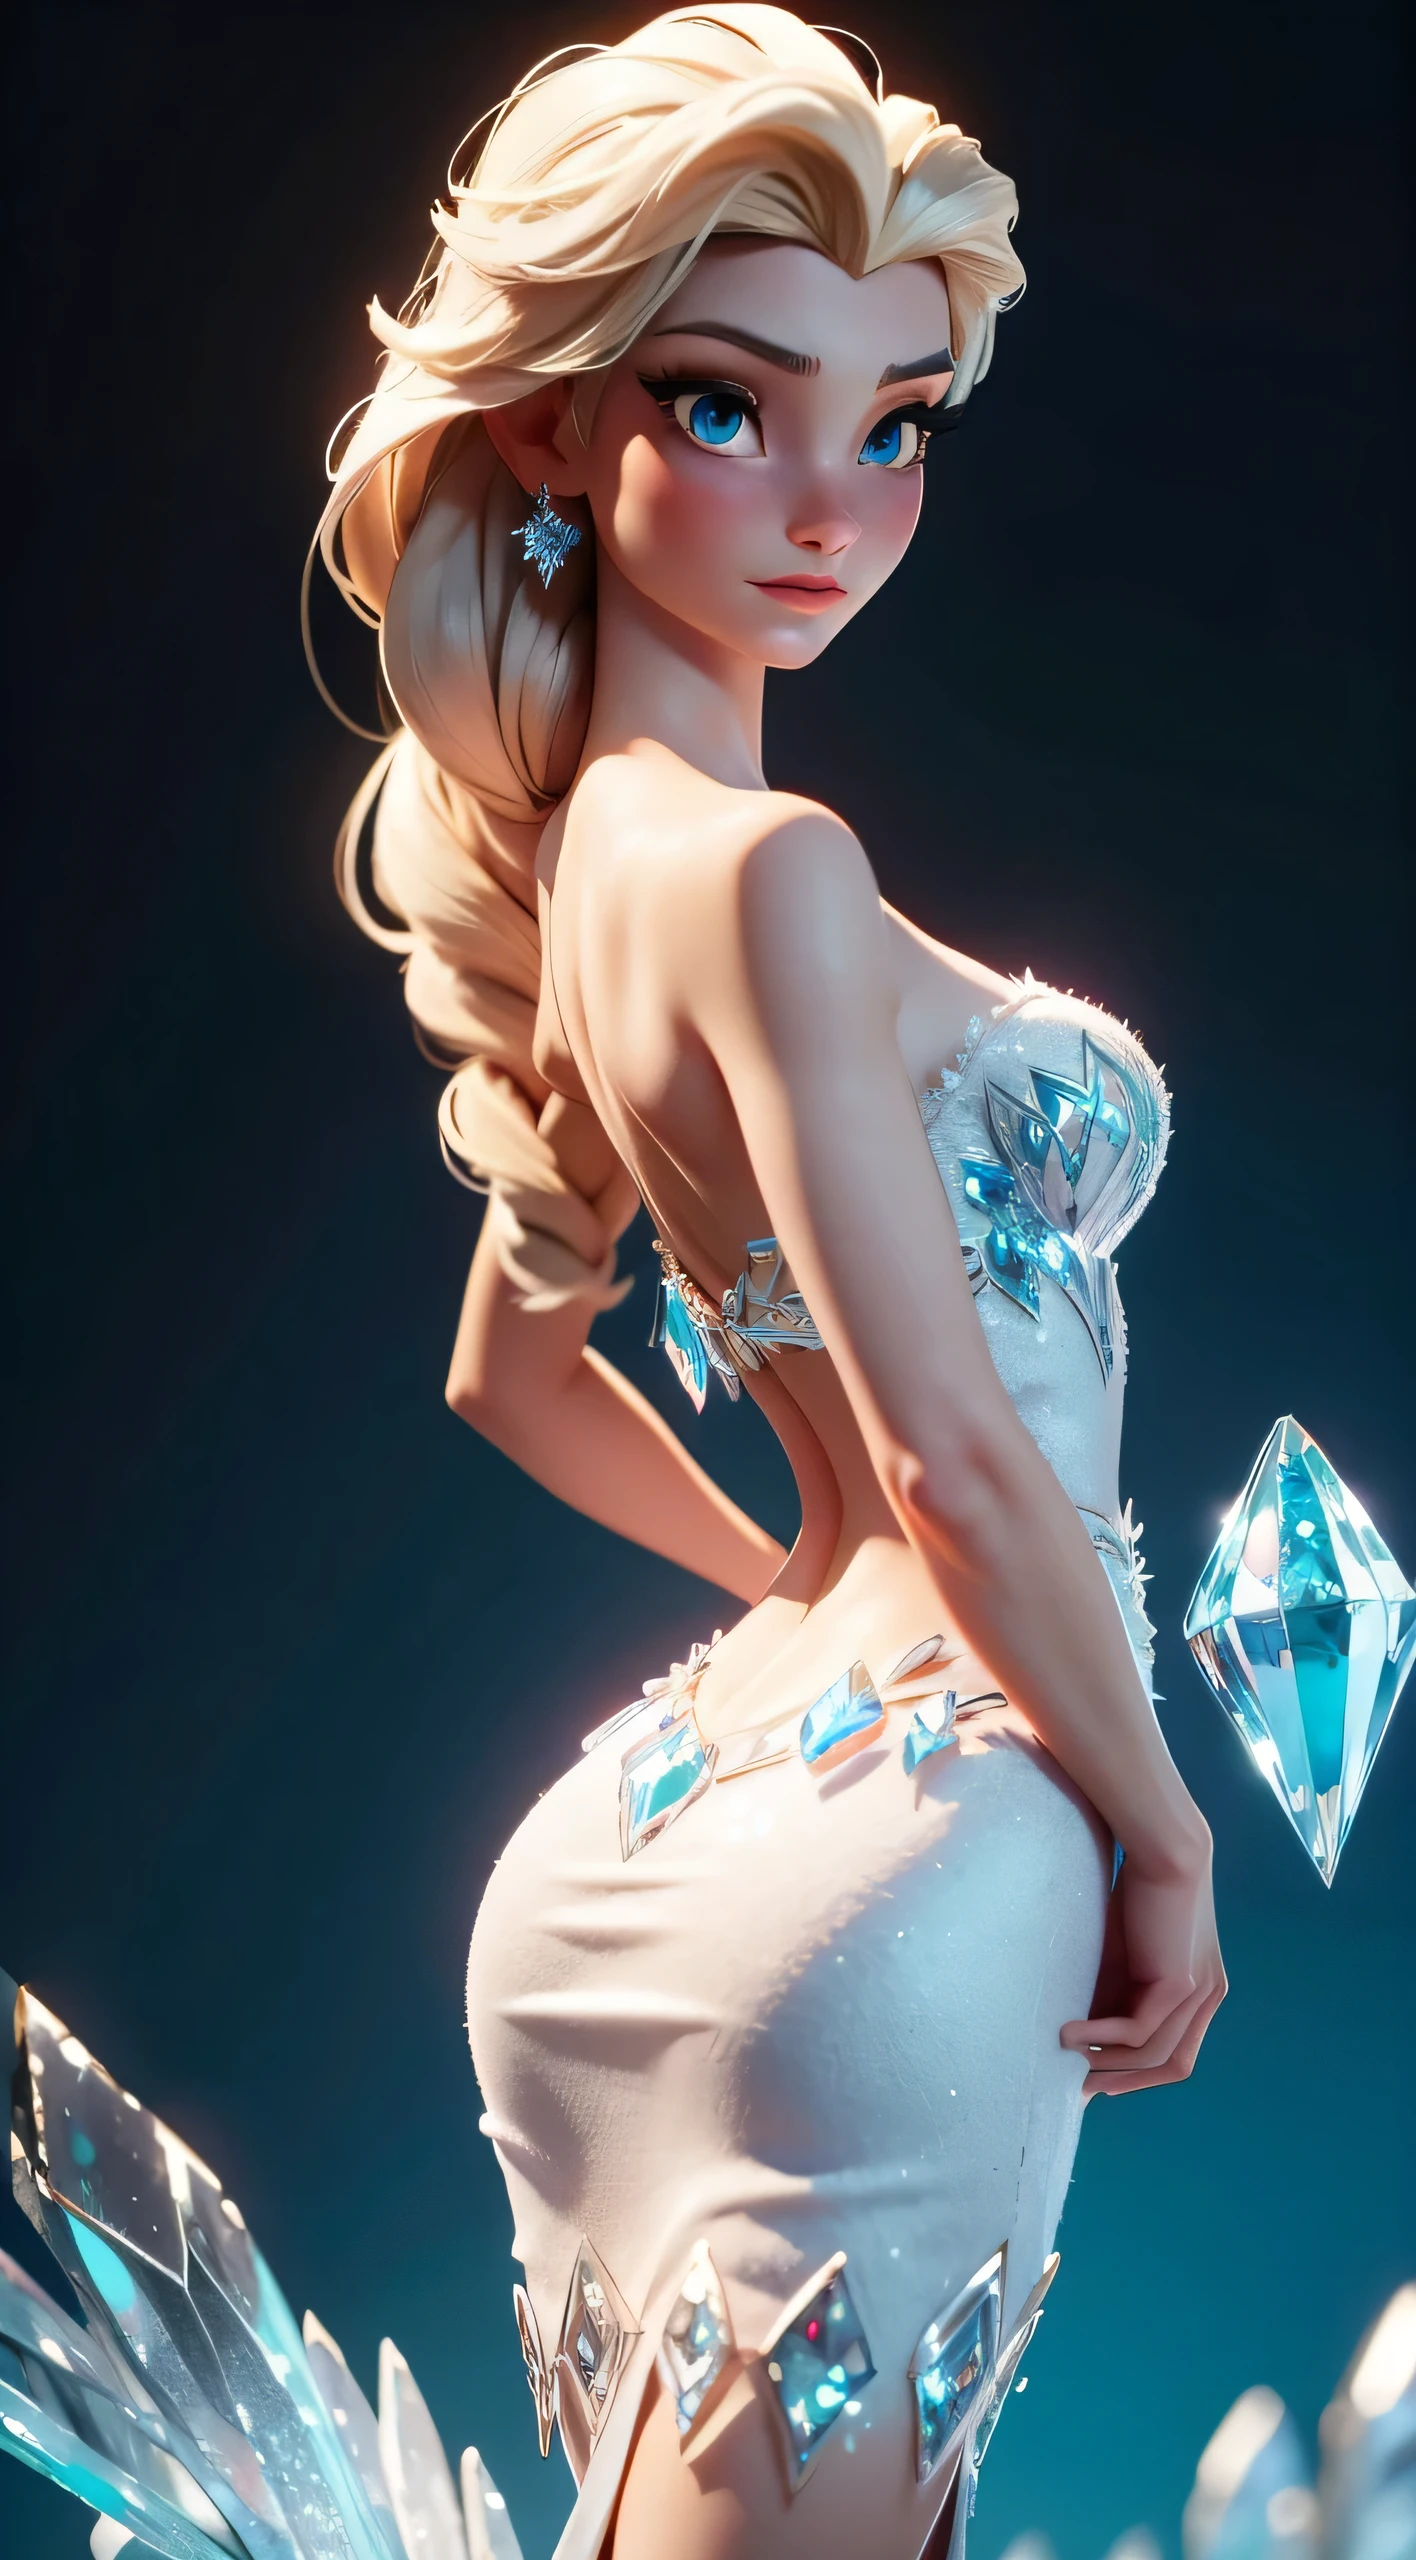 Imaginez Elsa dans une pose gracieuse, Coffre à cristaux de glace glacière Elsa, son dos partiellement cambré, mettant en valeur l&#39;élégance de son Diamant Bleu (cristal) Robe de La Reine des Neiges. Cette scène est inspirée du modèle LORA Elsa, capturer la beauté d&#39;une représentation 3D animée réaliste. L&#39;image est une arche arrière partielle, poitrine relevée, mettant en valeur les détails complexes de la robe d&#39;Elsa et la posture royale de la reine de la Reine des Neiges. Avec un réalisme réaliste, L&#39;expression et la pose d&#39;Elsa transmettent un sentiment d&#39;enchantement et de grâce.,